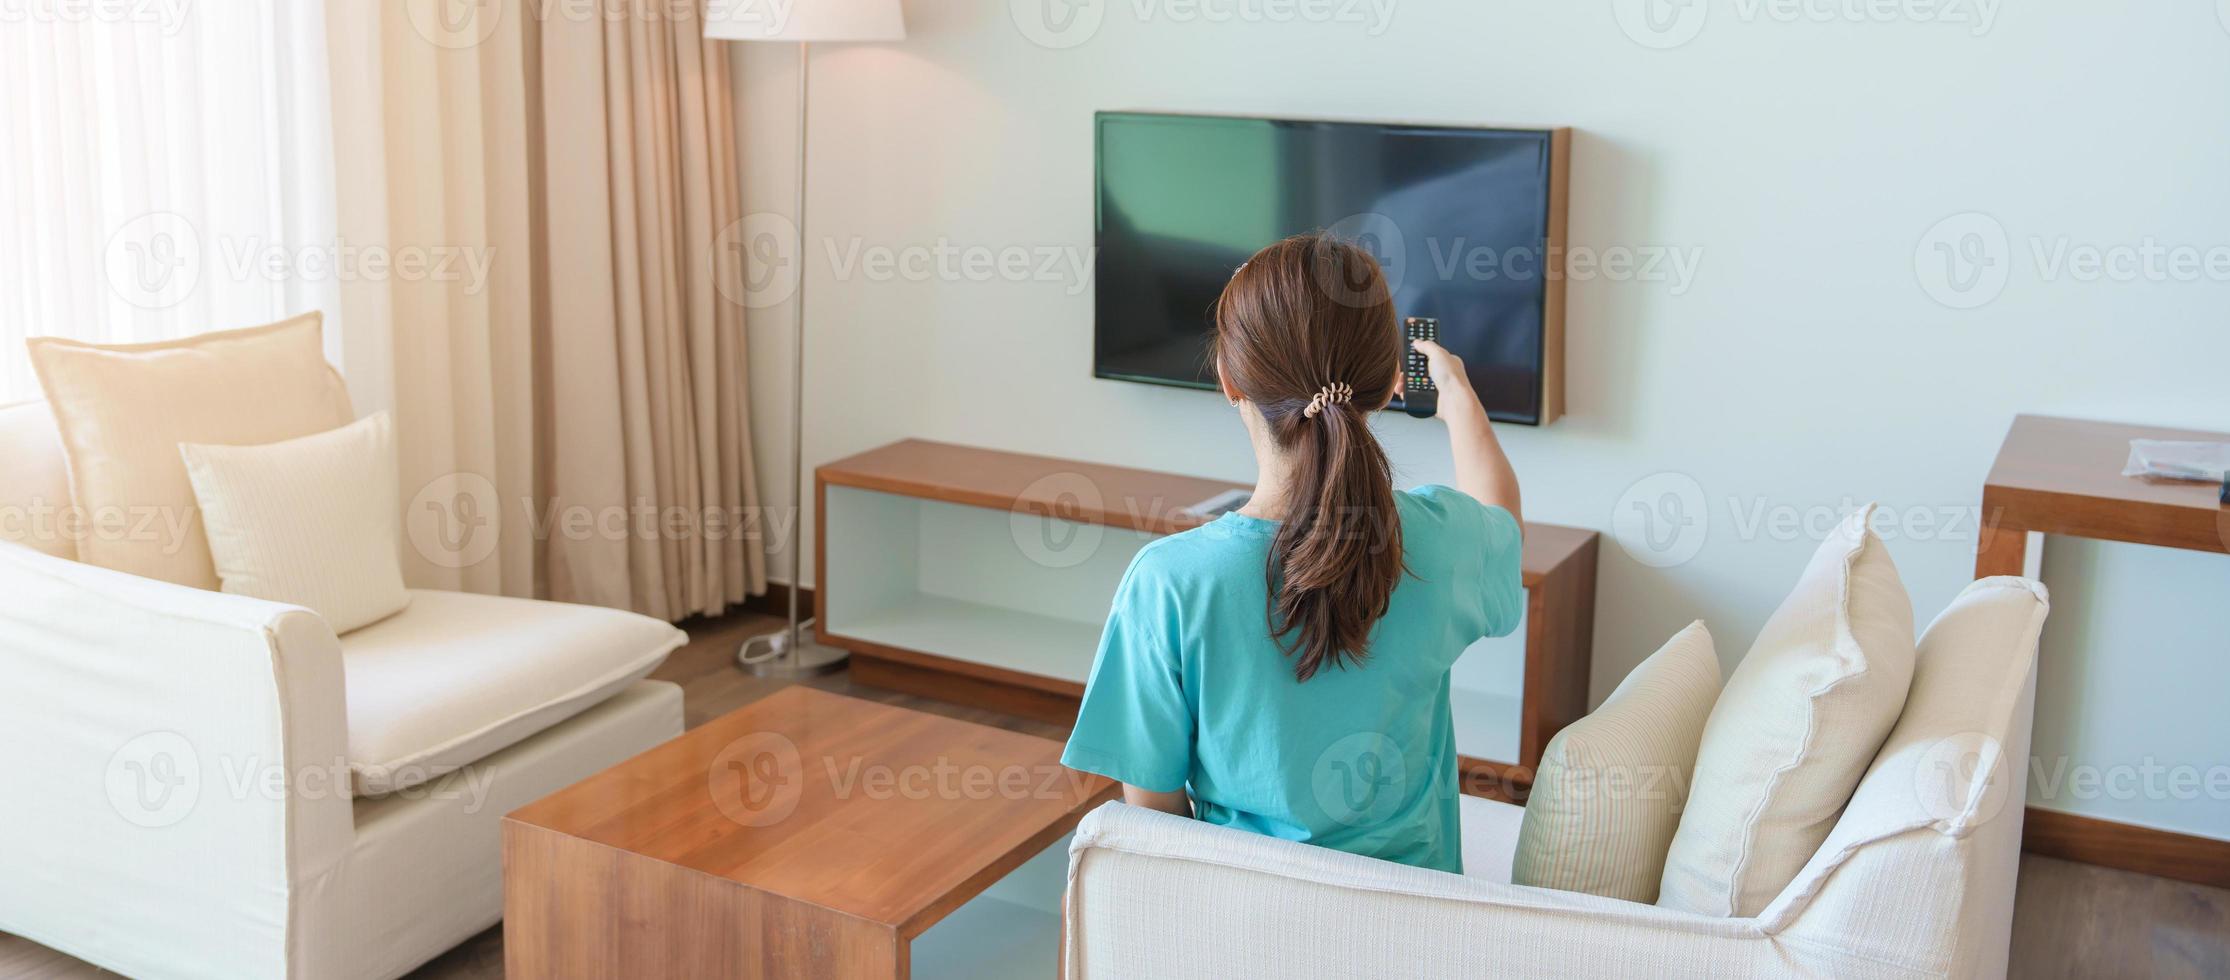 femme se reposant sur le canapé, fille utilisant la télécommande et choisissant une émission de télévision et une série de films pendant le repos sur le canapé le matin. concept de vie en appartement photo